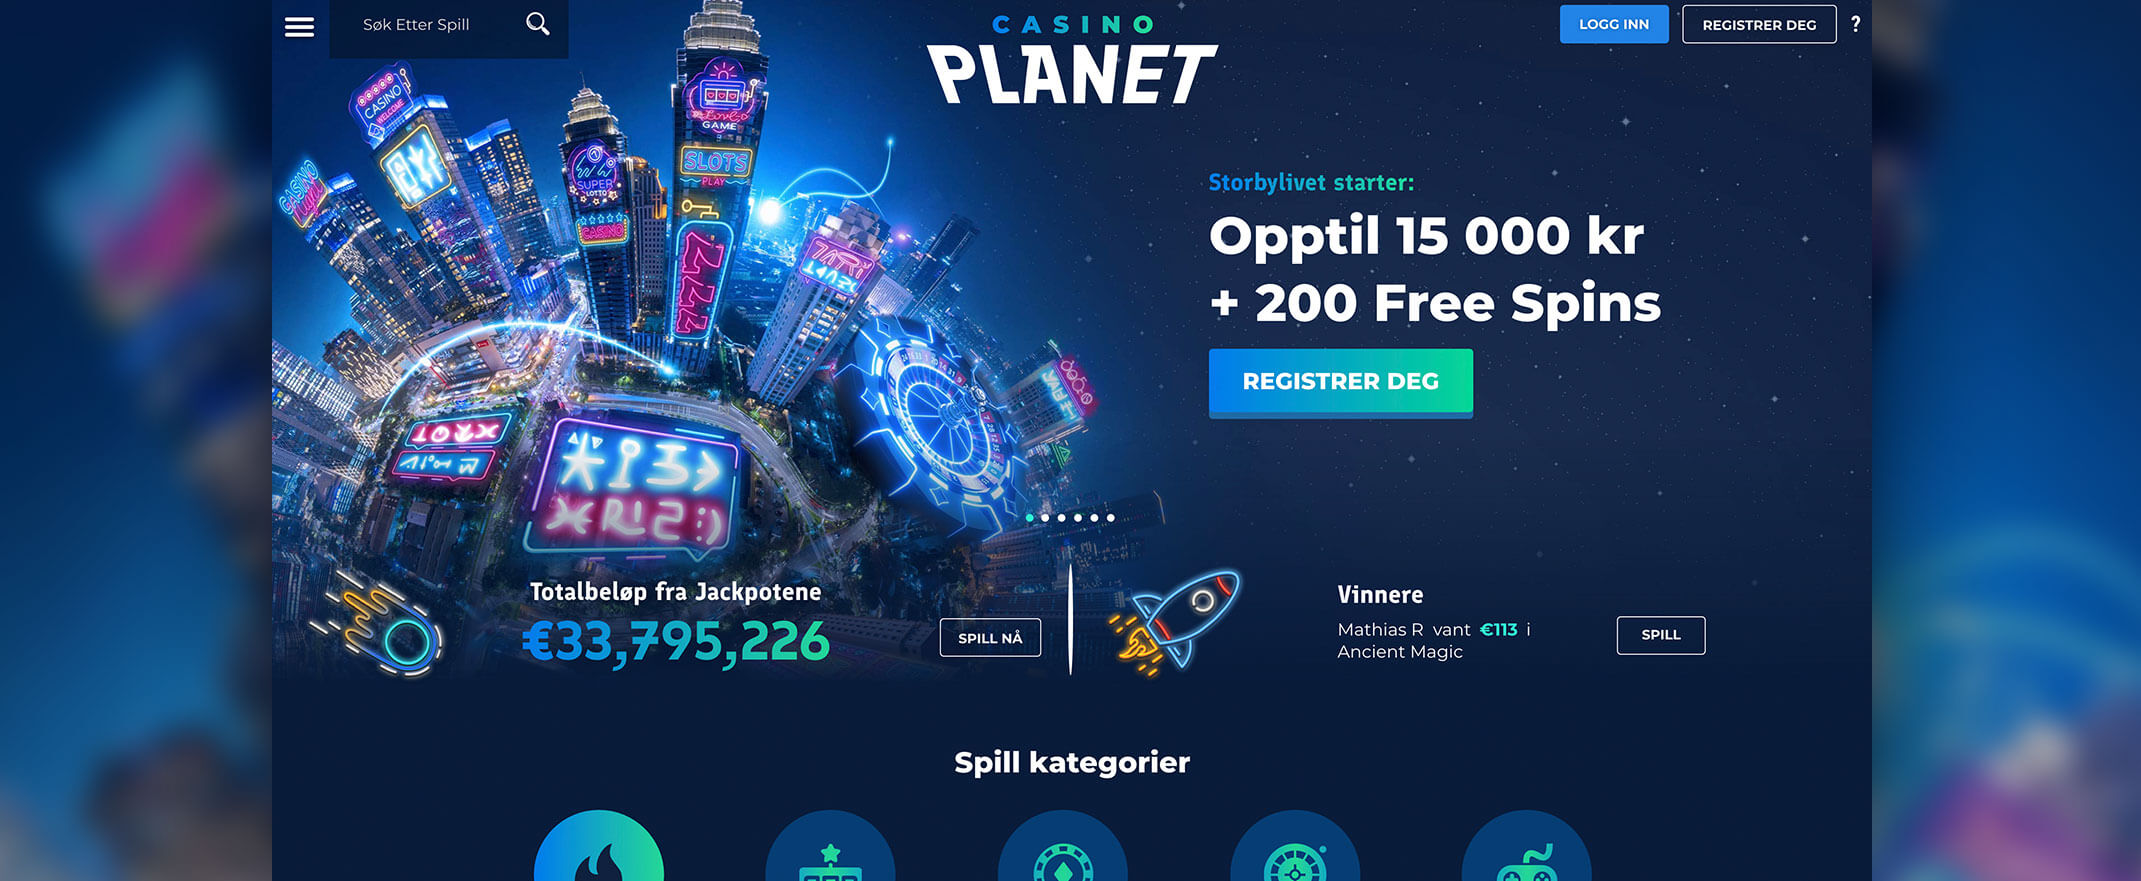 Casino Planet Bonus